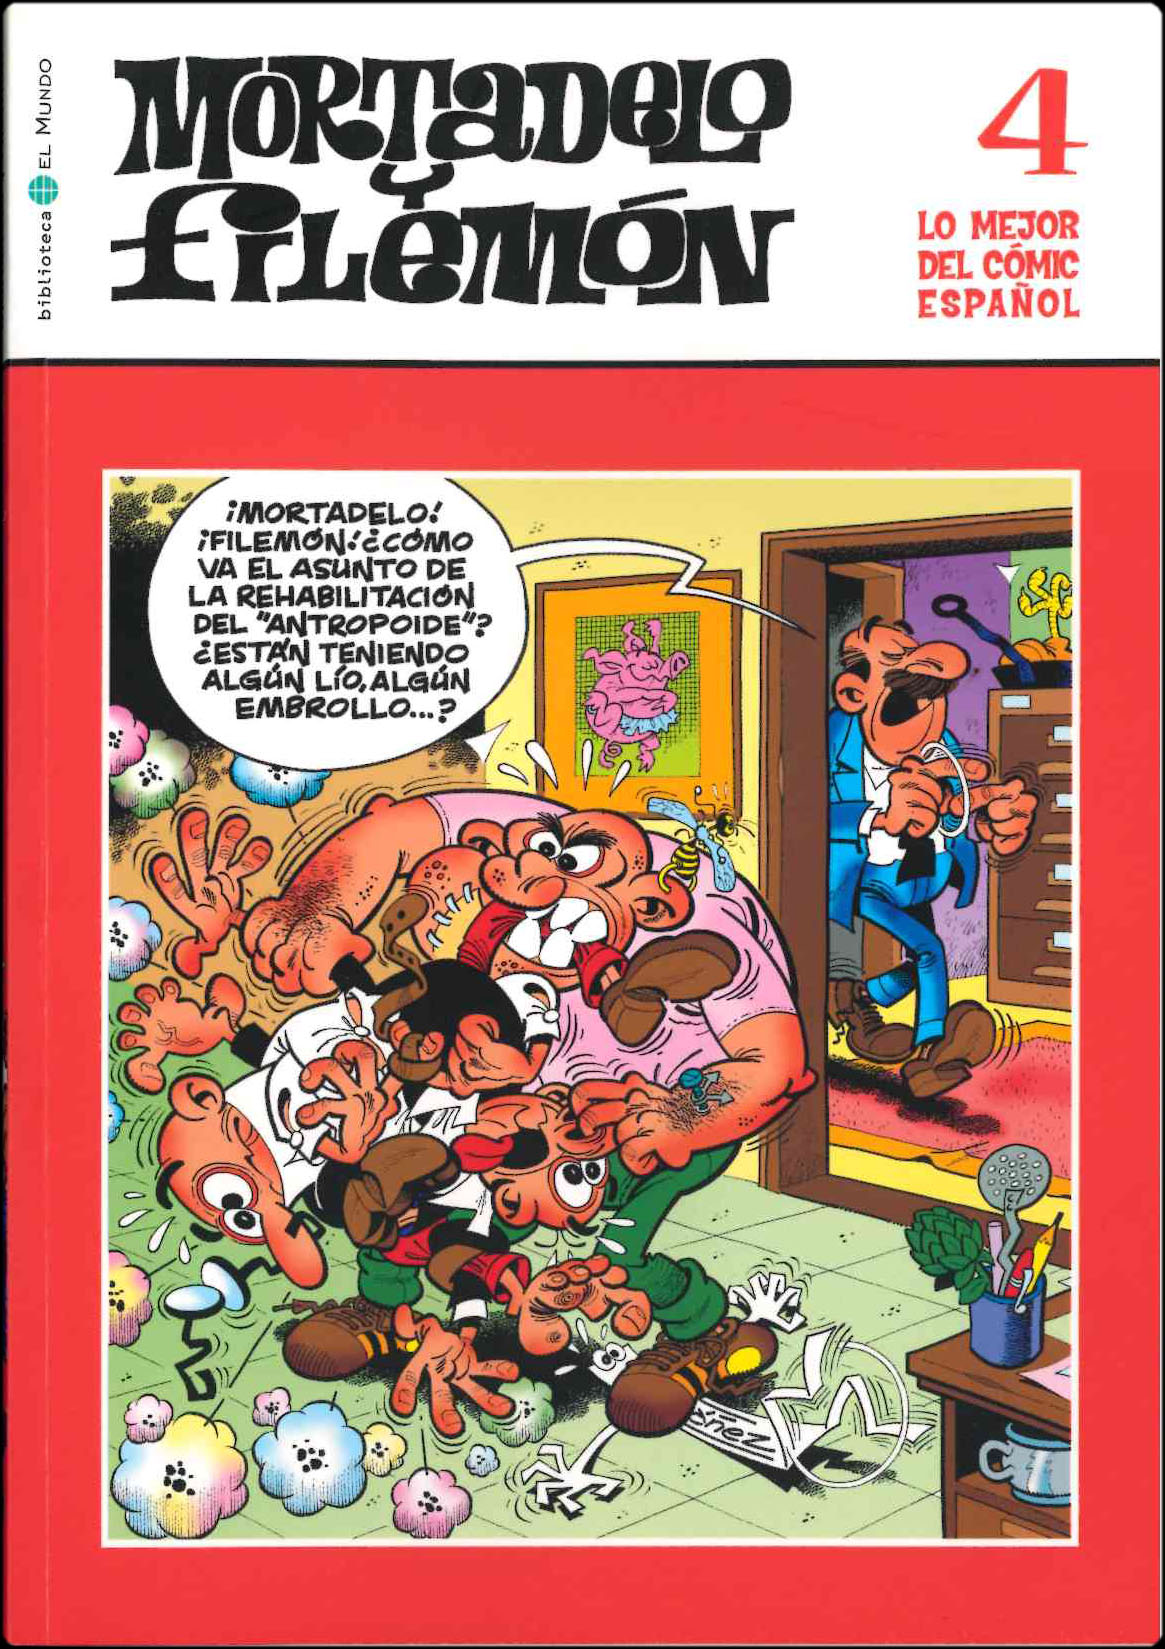 Lo mejor del Cómic Español. Grupo Zeta: El Mundo / Ediciones B 2006. Nº 4. Mortadelo y Filemón